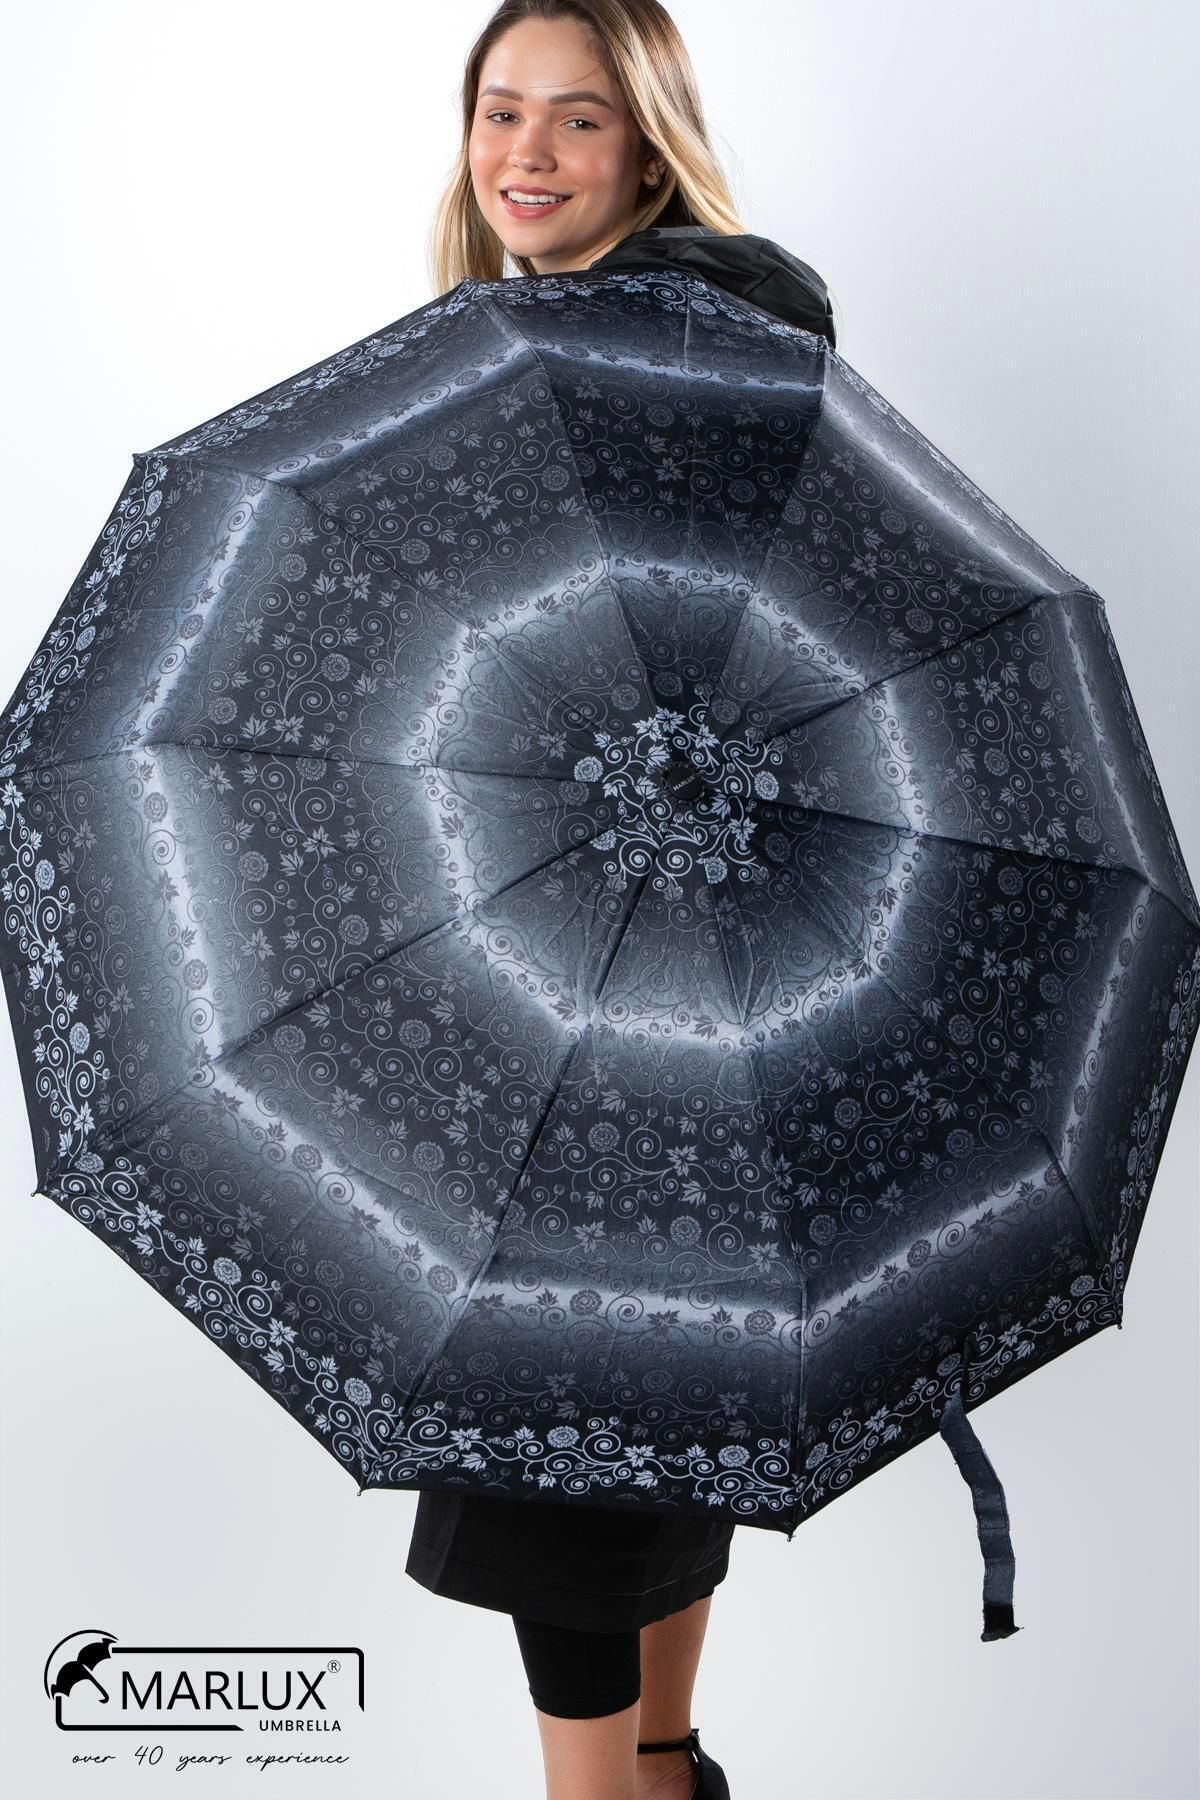 Siyah Şemsiye Fiyatları & Siyah Baston Şemsiye - Trendyol - Sayfa 33